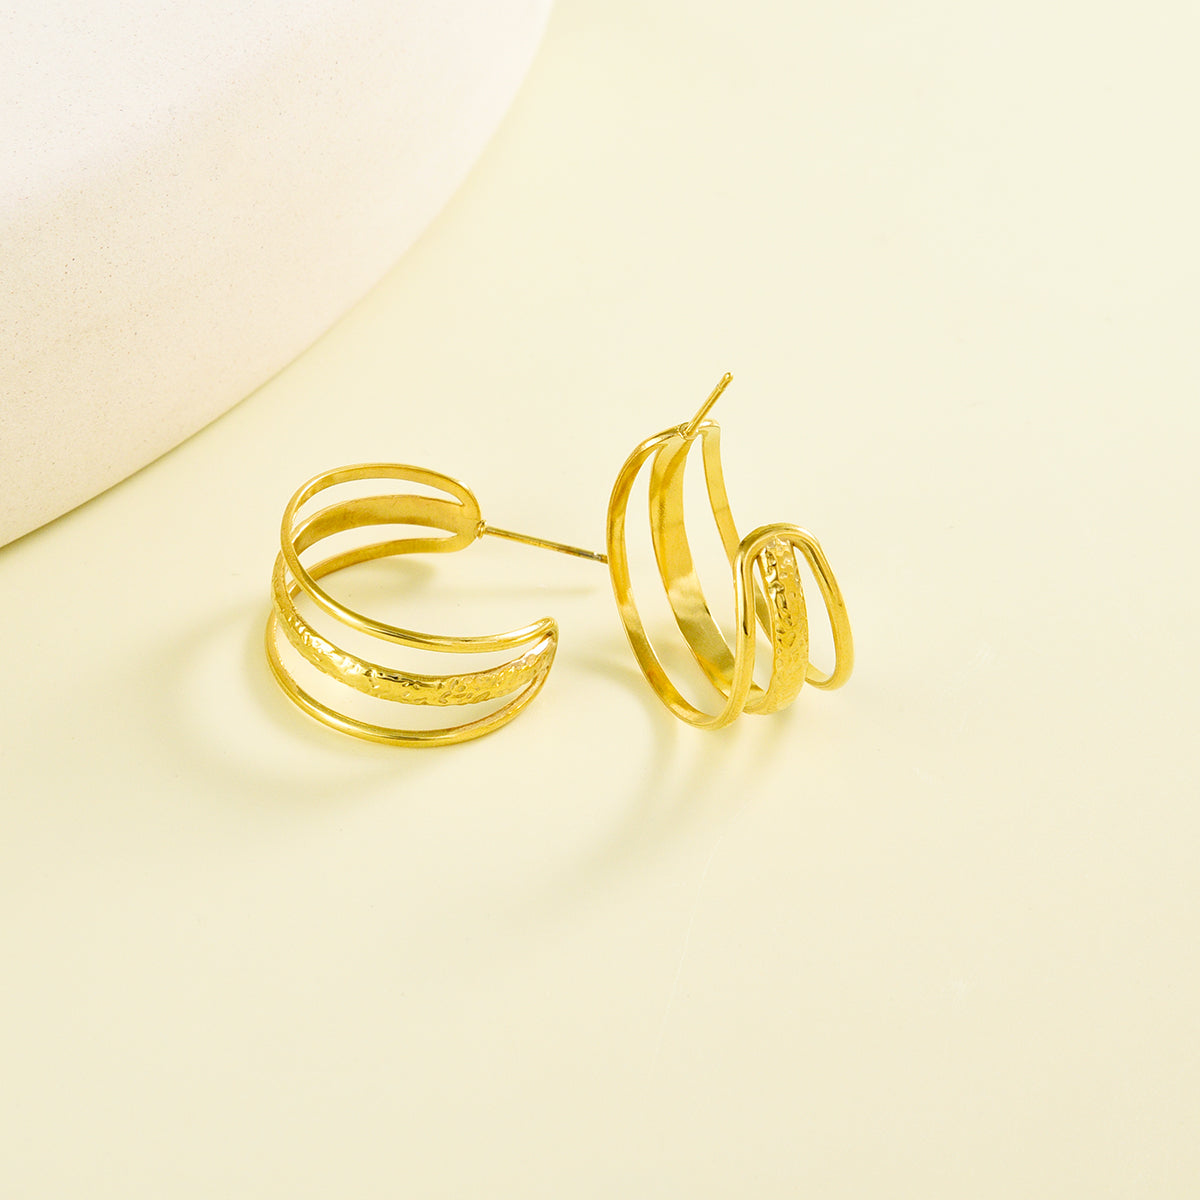 Classy triple layered golden earrings